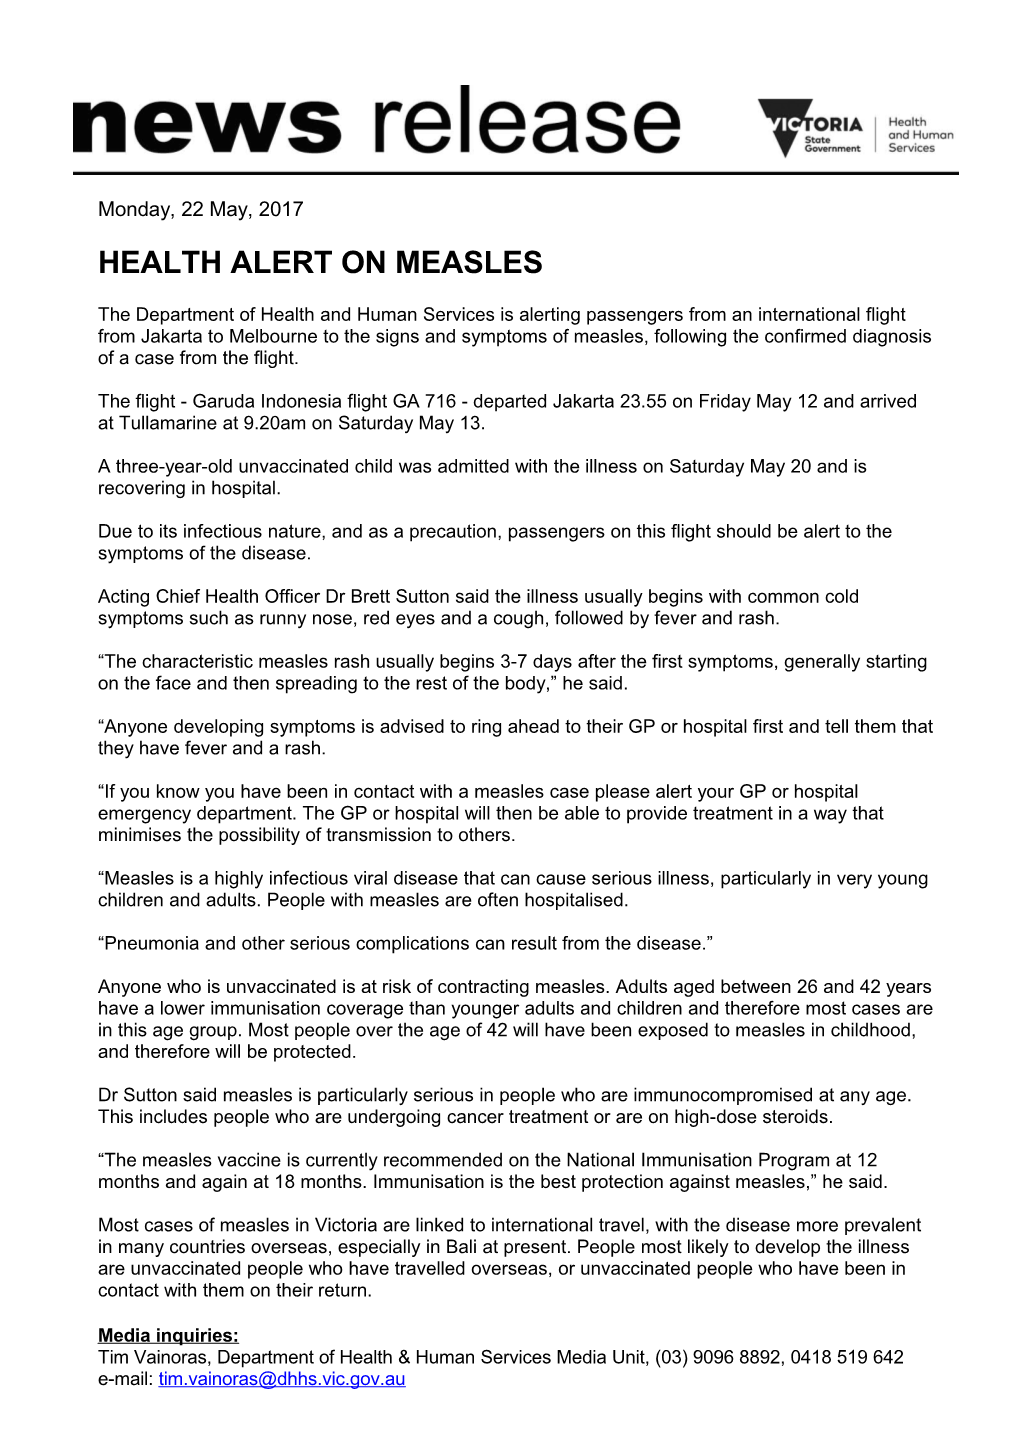 Health Alert on Measles